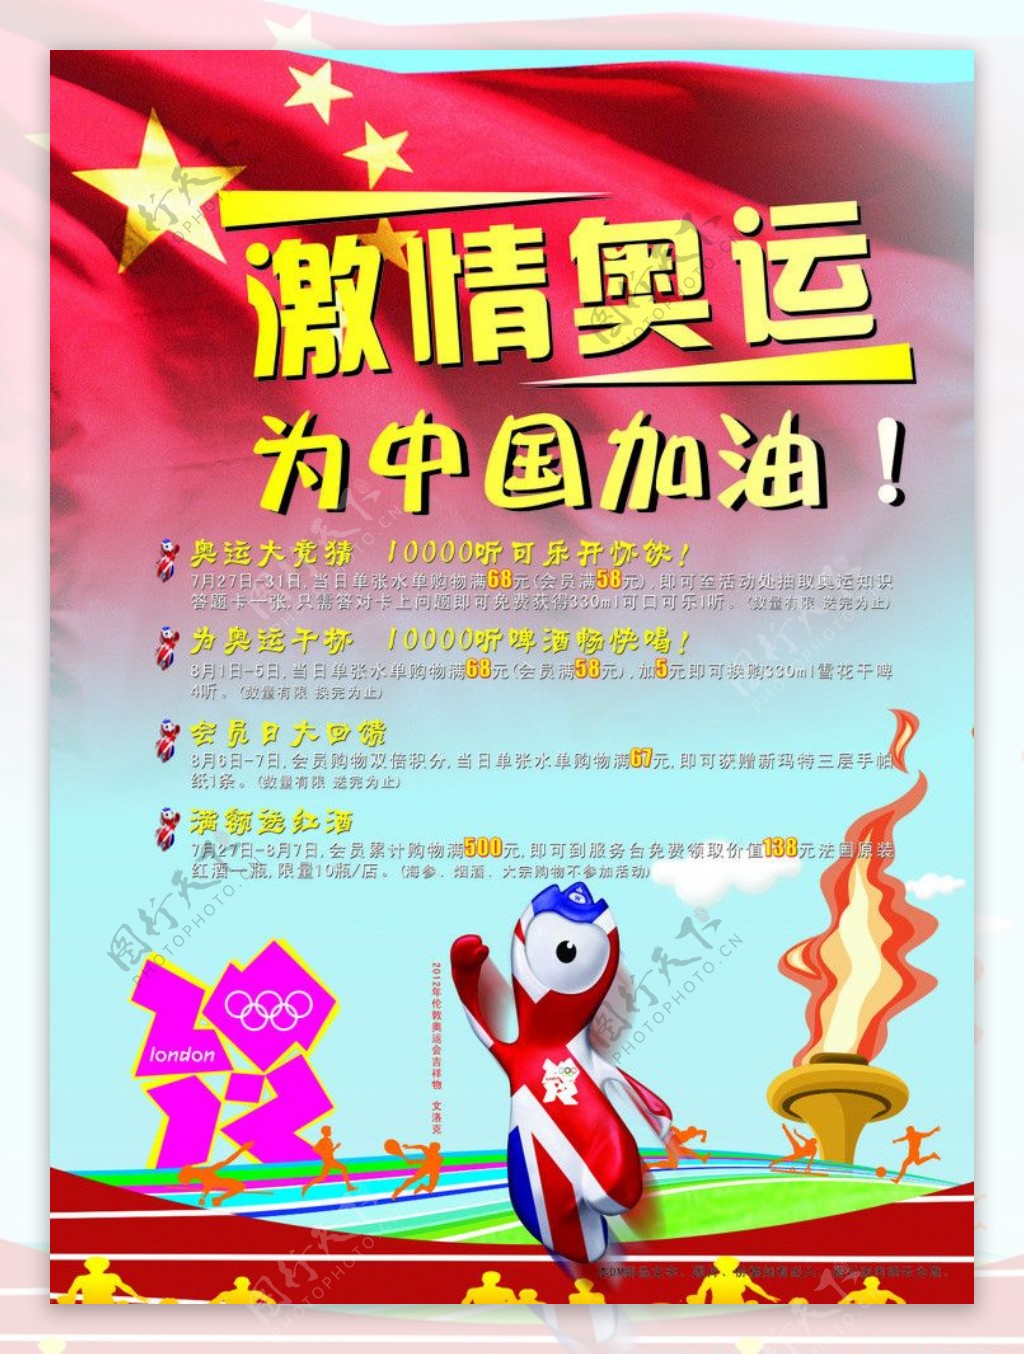 激情奥运为中国加油活动DM封面图片